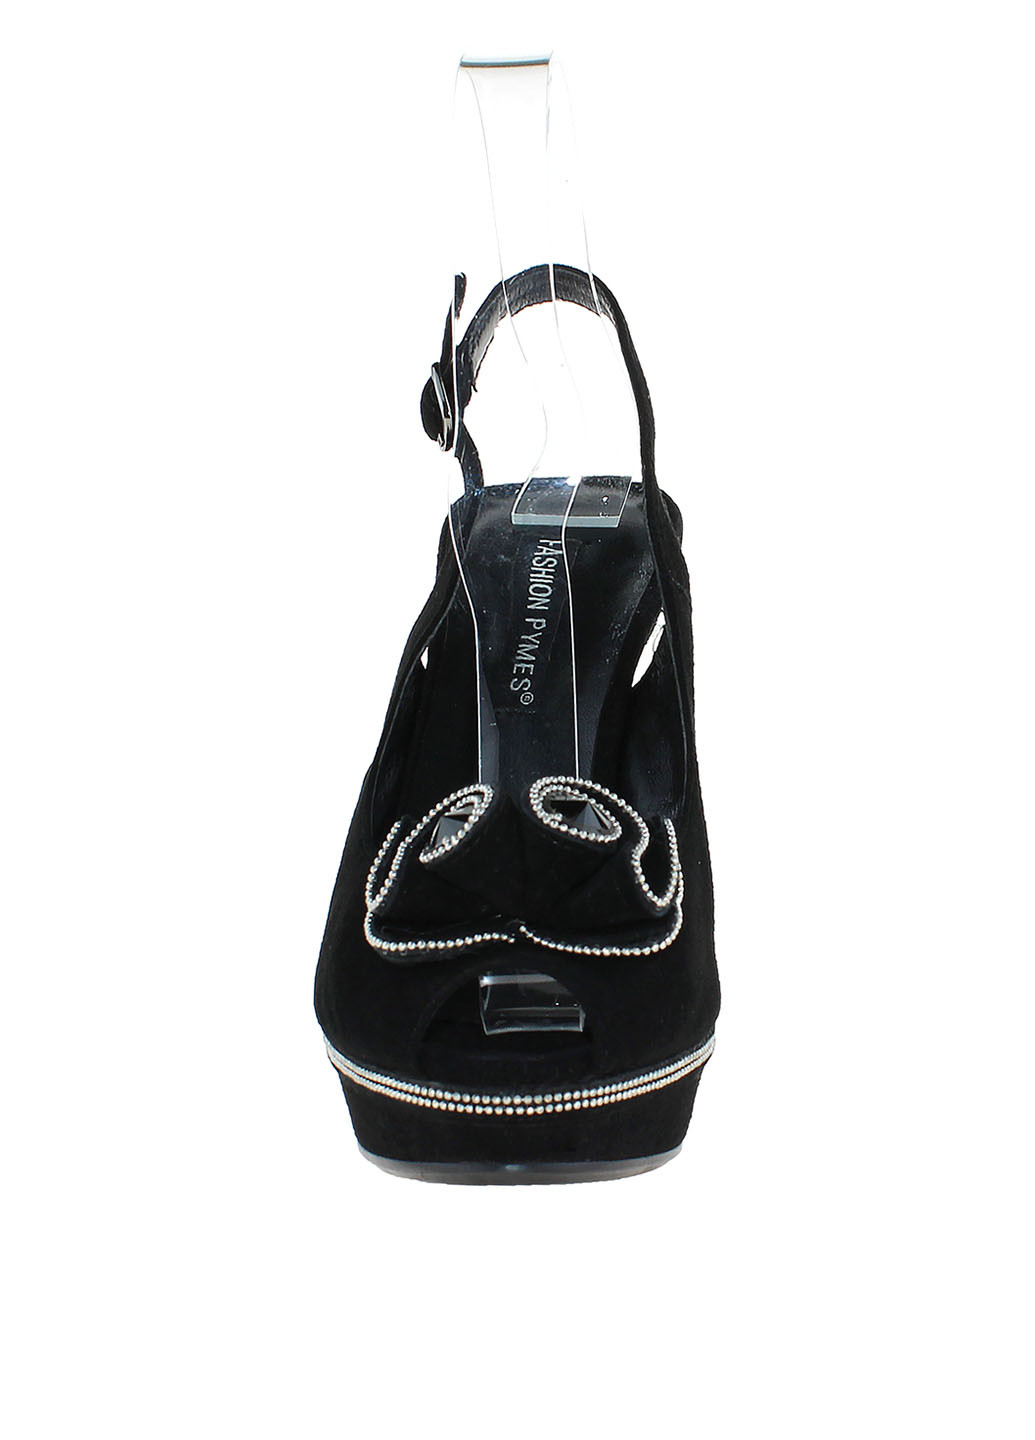 Черные босоножки Fashion Pymes с ремешком с металлическими вставками, с камнями, с брошкой